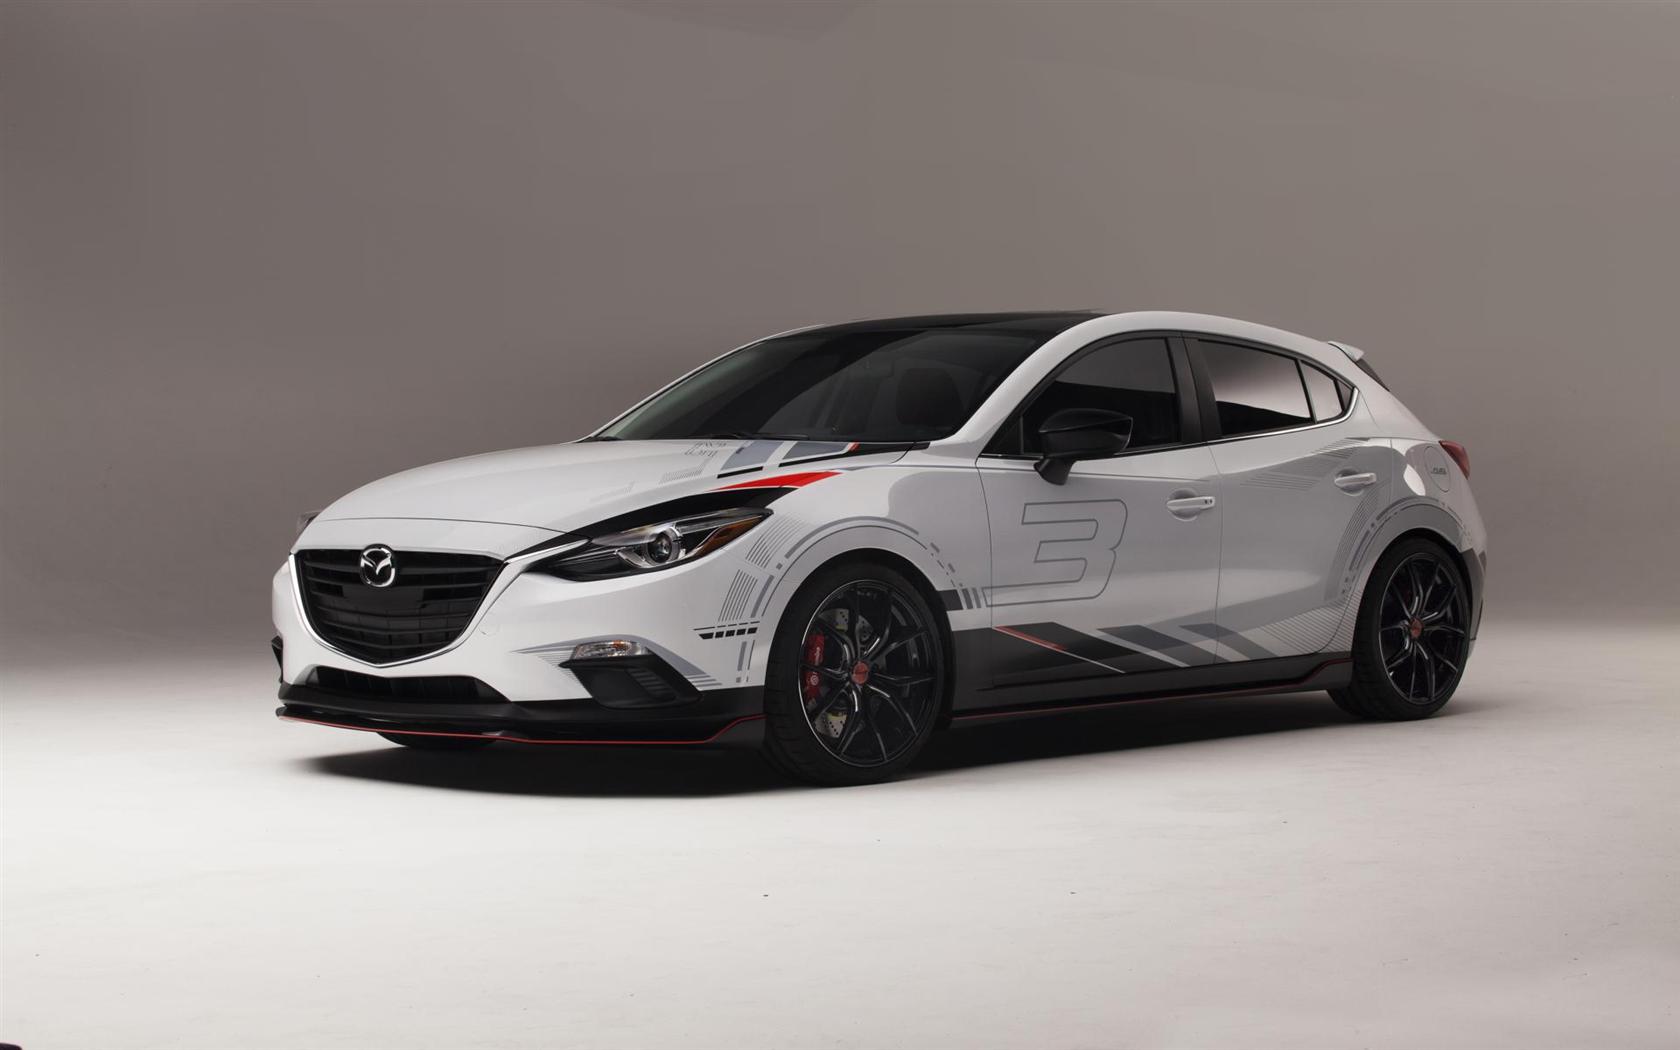 2013 Mazda Club Sport 3 Concept